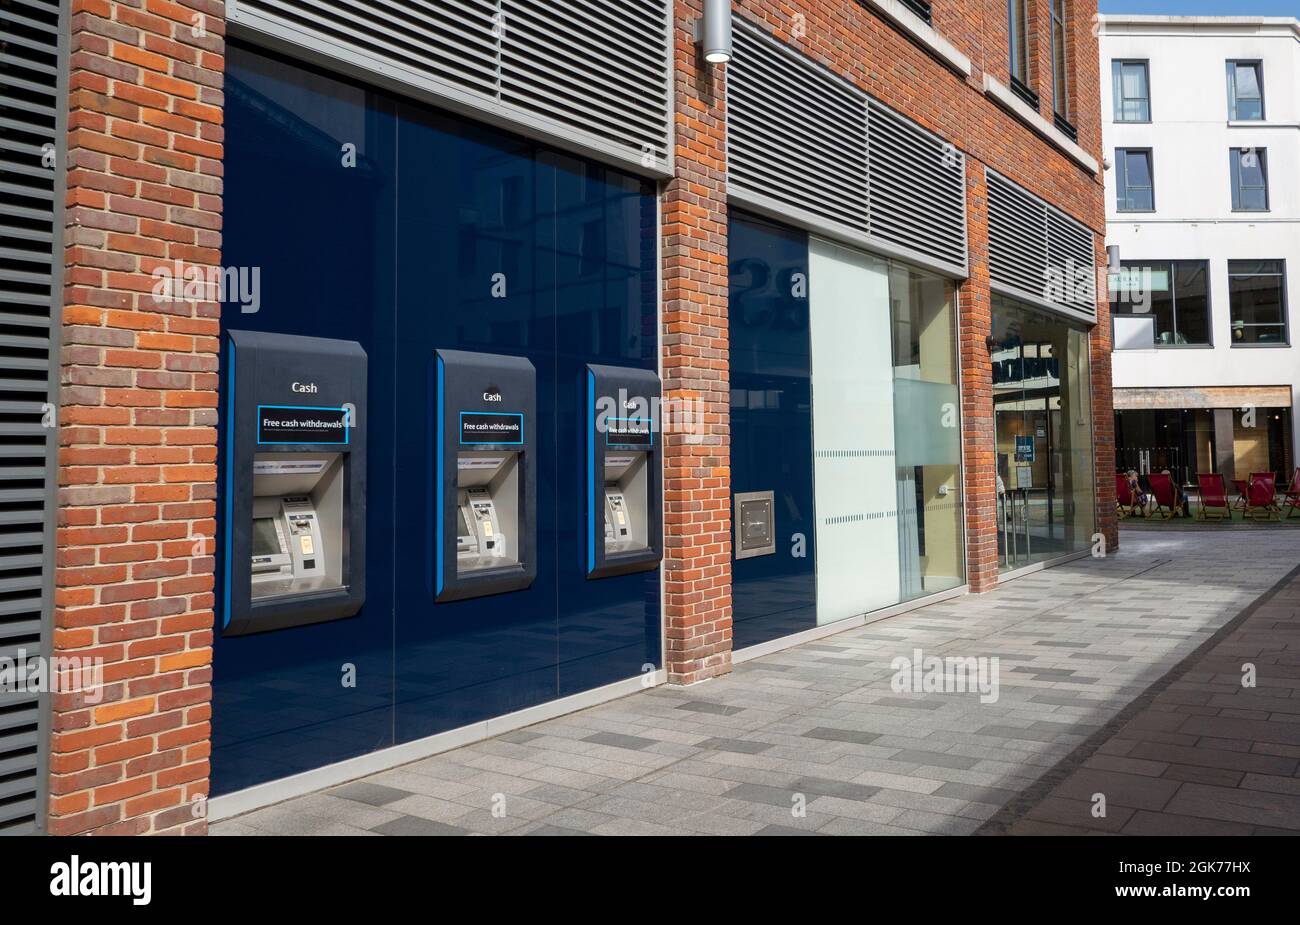 Newbury, Berkshire, Angleterre, Royaume-Uni. 2021. Banque du centre-ville avec distributeurs de billets sur le mur extérieur. Banque D'Images